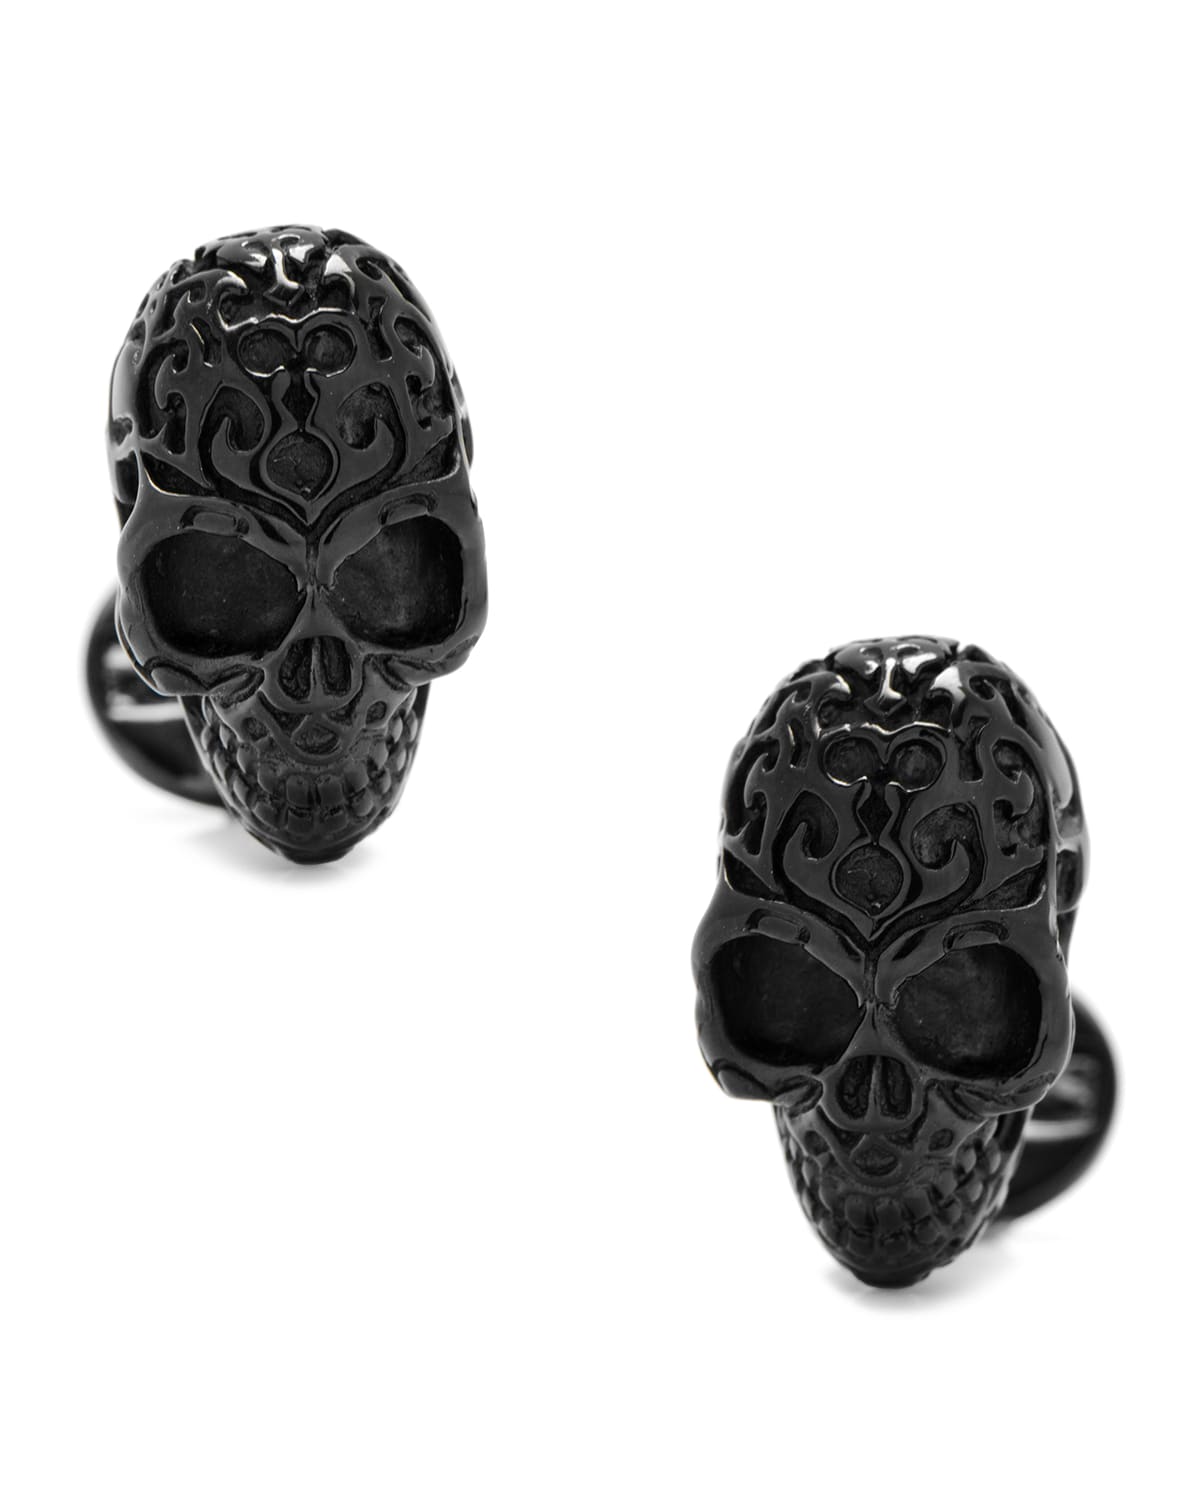 3D Fatale Skull Cuff Links, Black